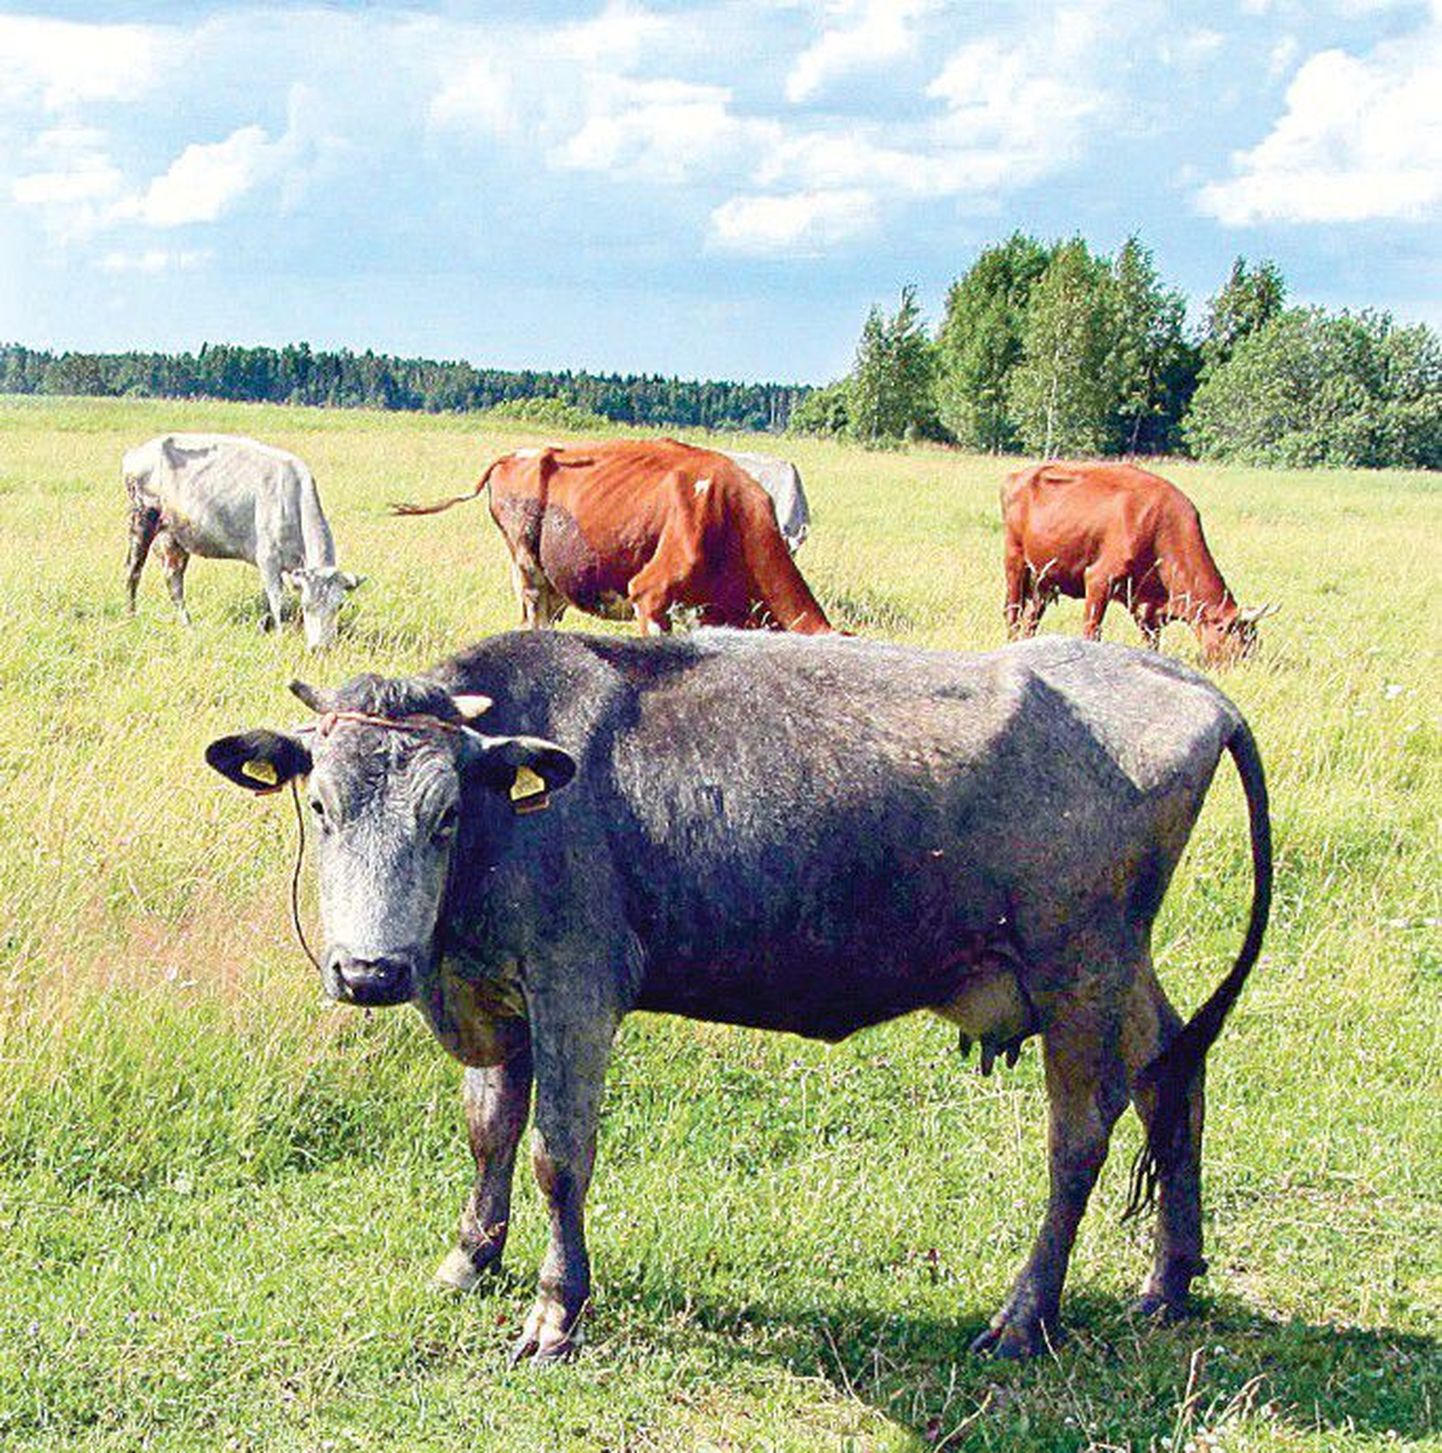 Läti riik on andnud hoogu sinakashalli kasukaga liivi lehma aretusele, sellegi tõu säilimine on suuresti väiketalunike teene. Foto on tehtud ülemöödunud nädalal Kuramaal.